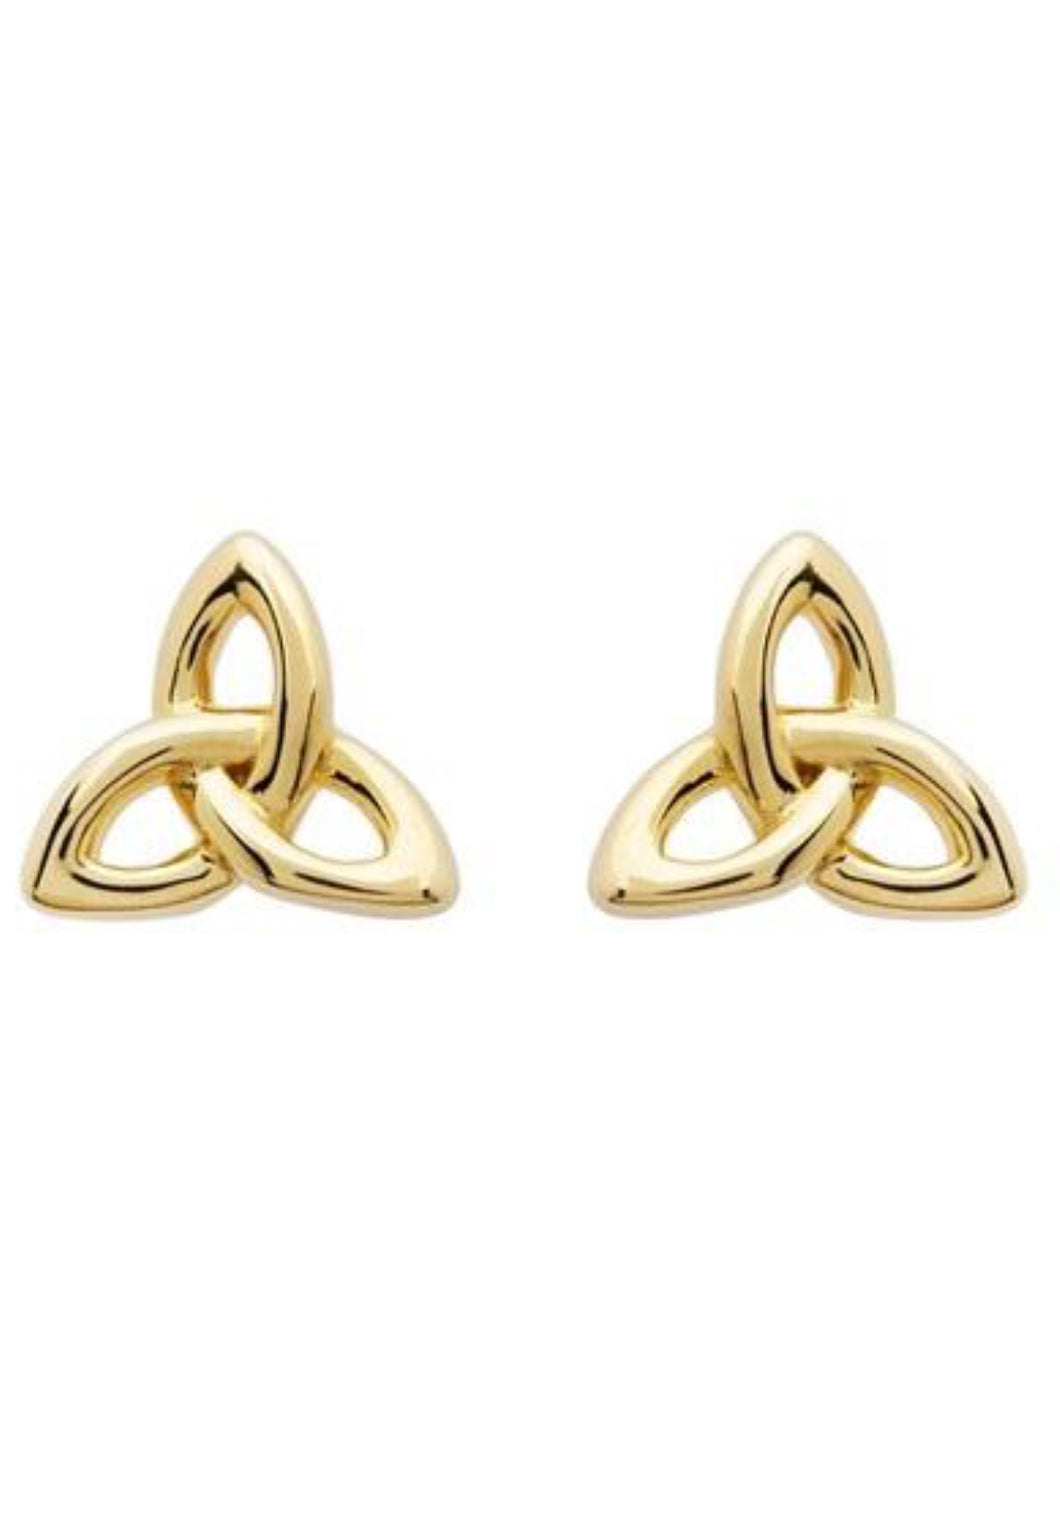 Trinity Stud Earrings 14KT Gold Vermeil